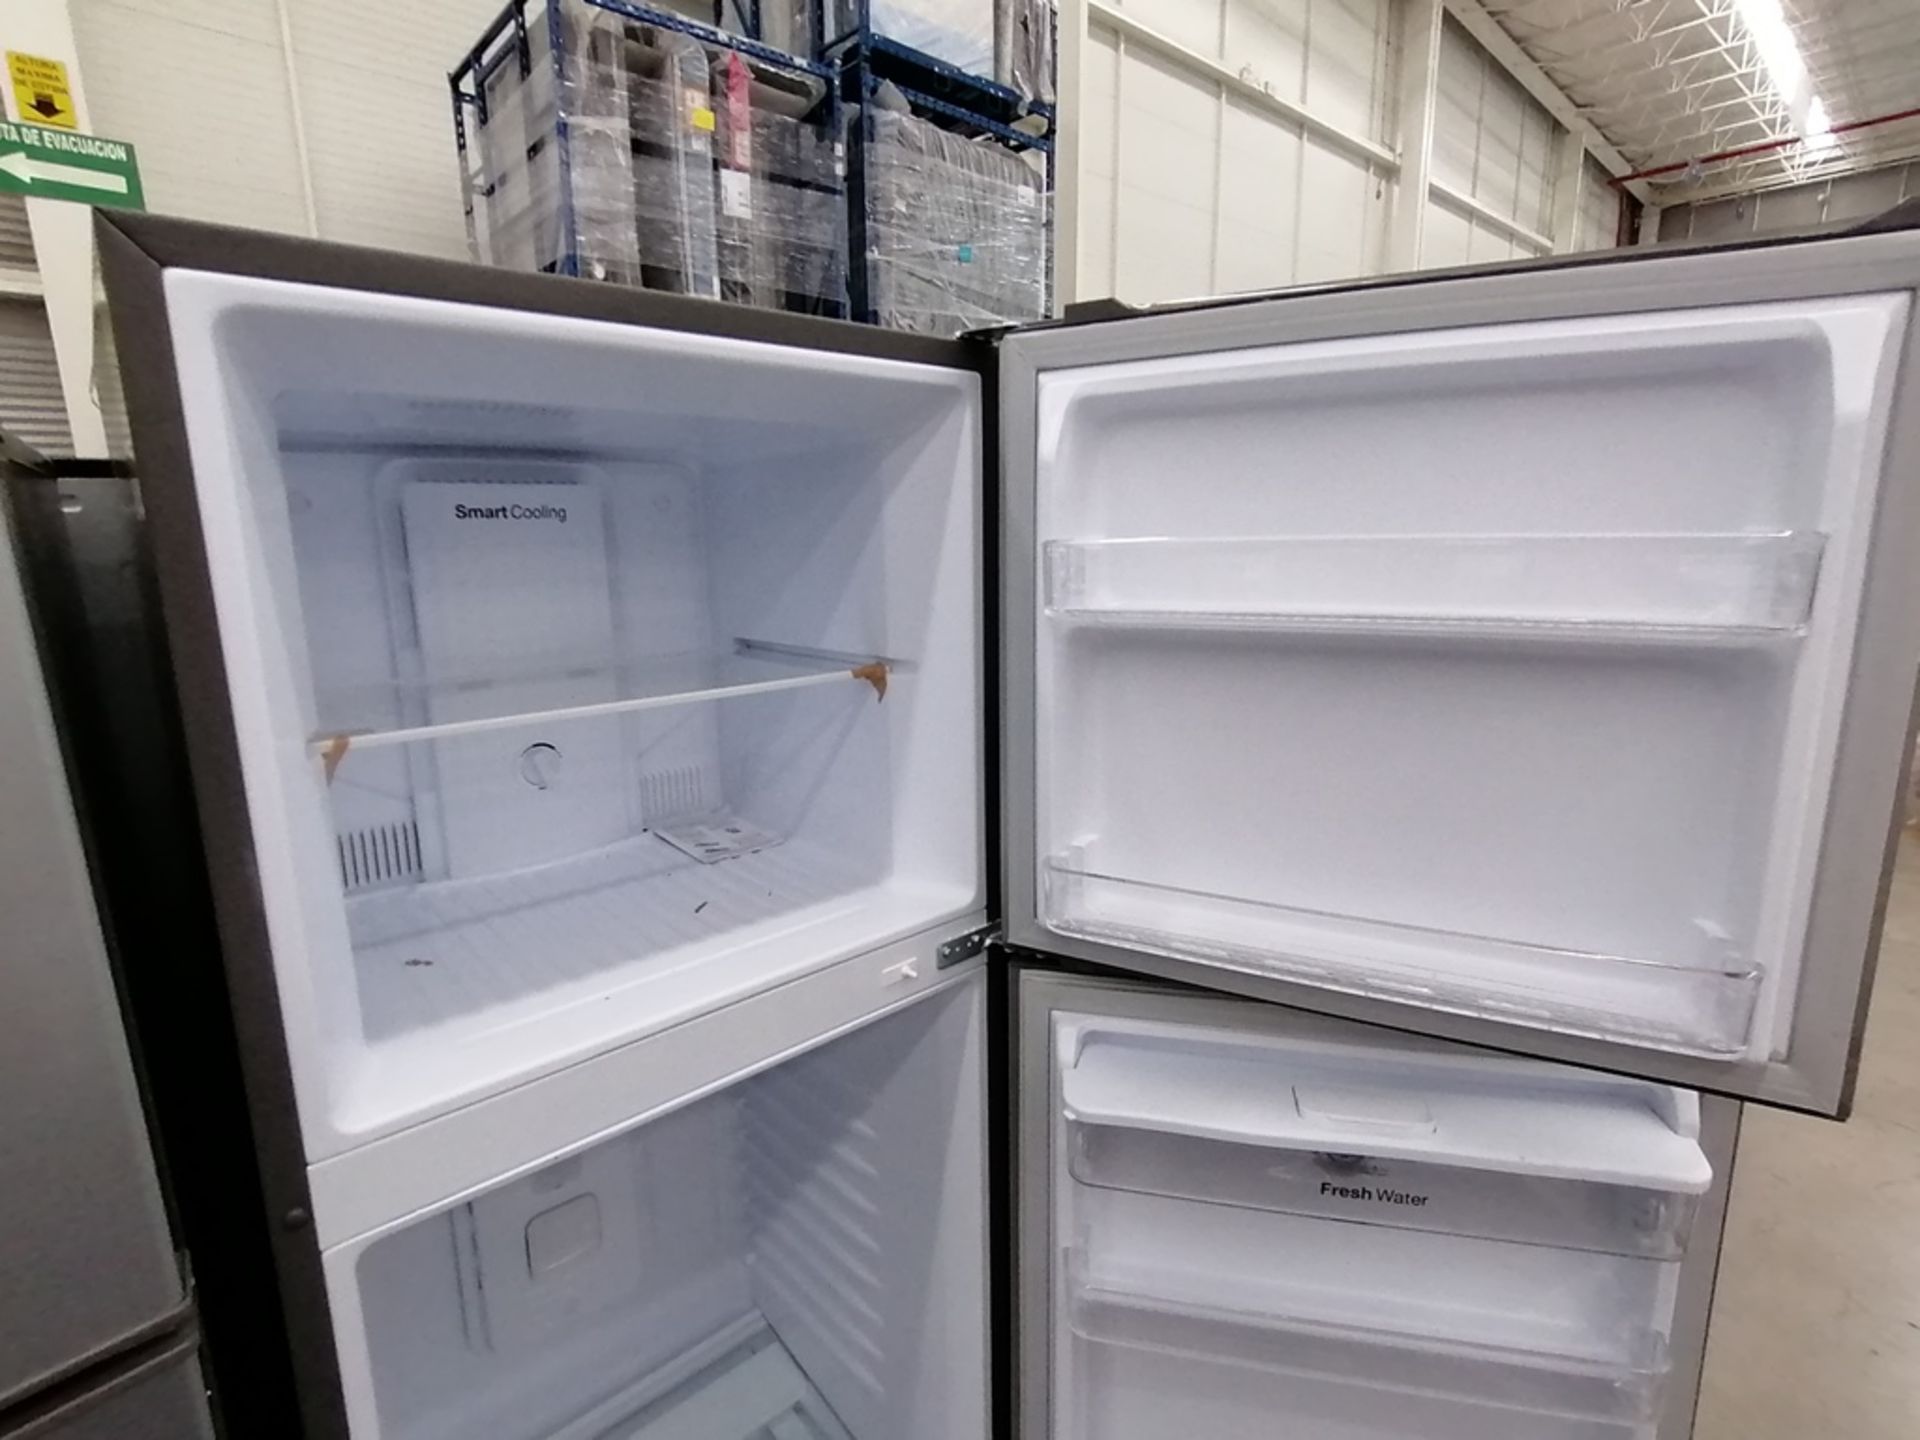 Lote de 2 refrigeradores incluye: 1 Refrigerador, Marca Winia, Modelo DFR40510GNDG, Serie MR21YN107 - Image 10 of 15